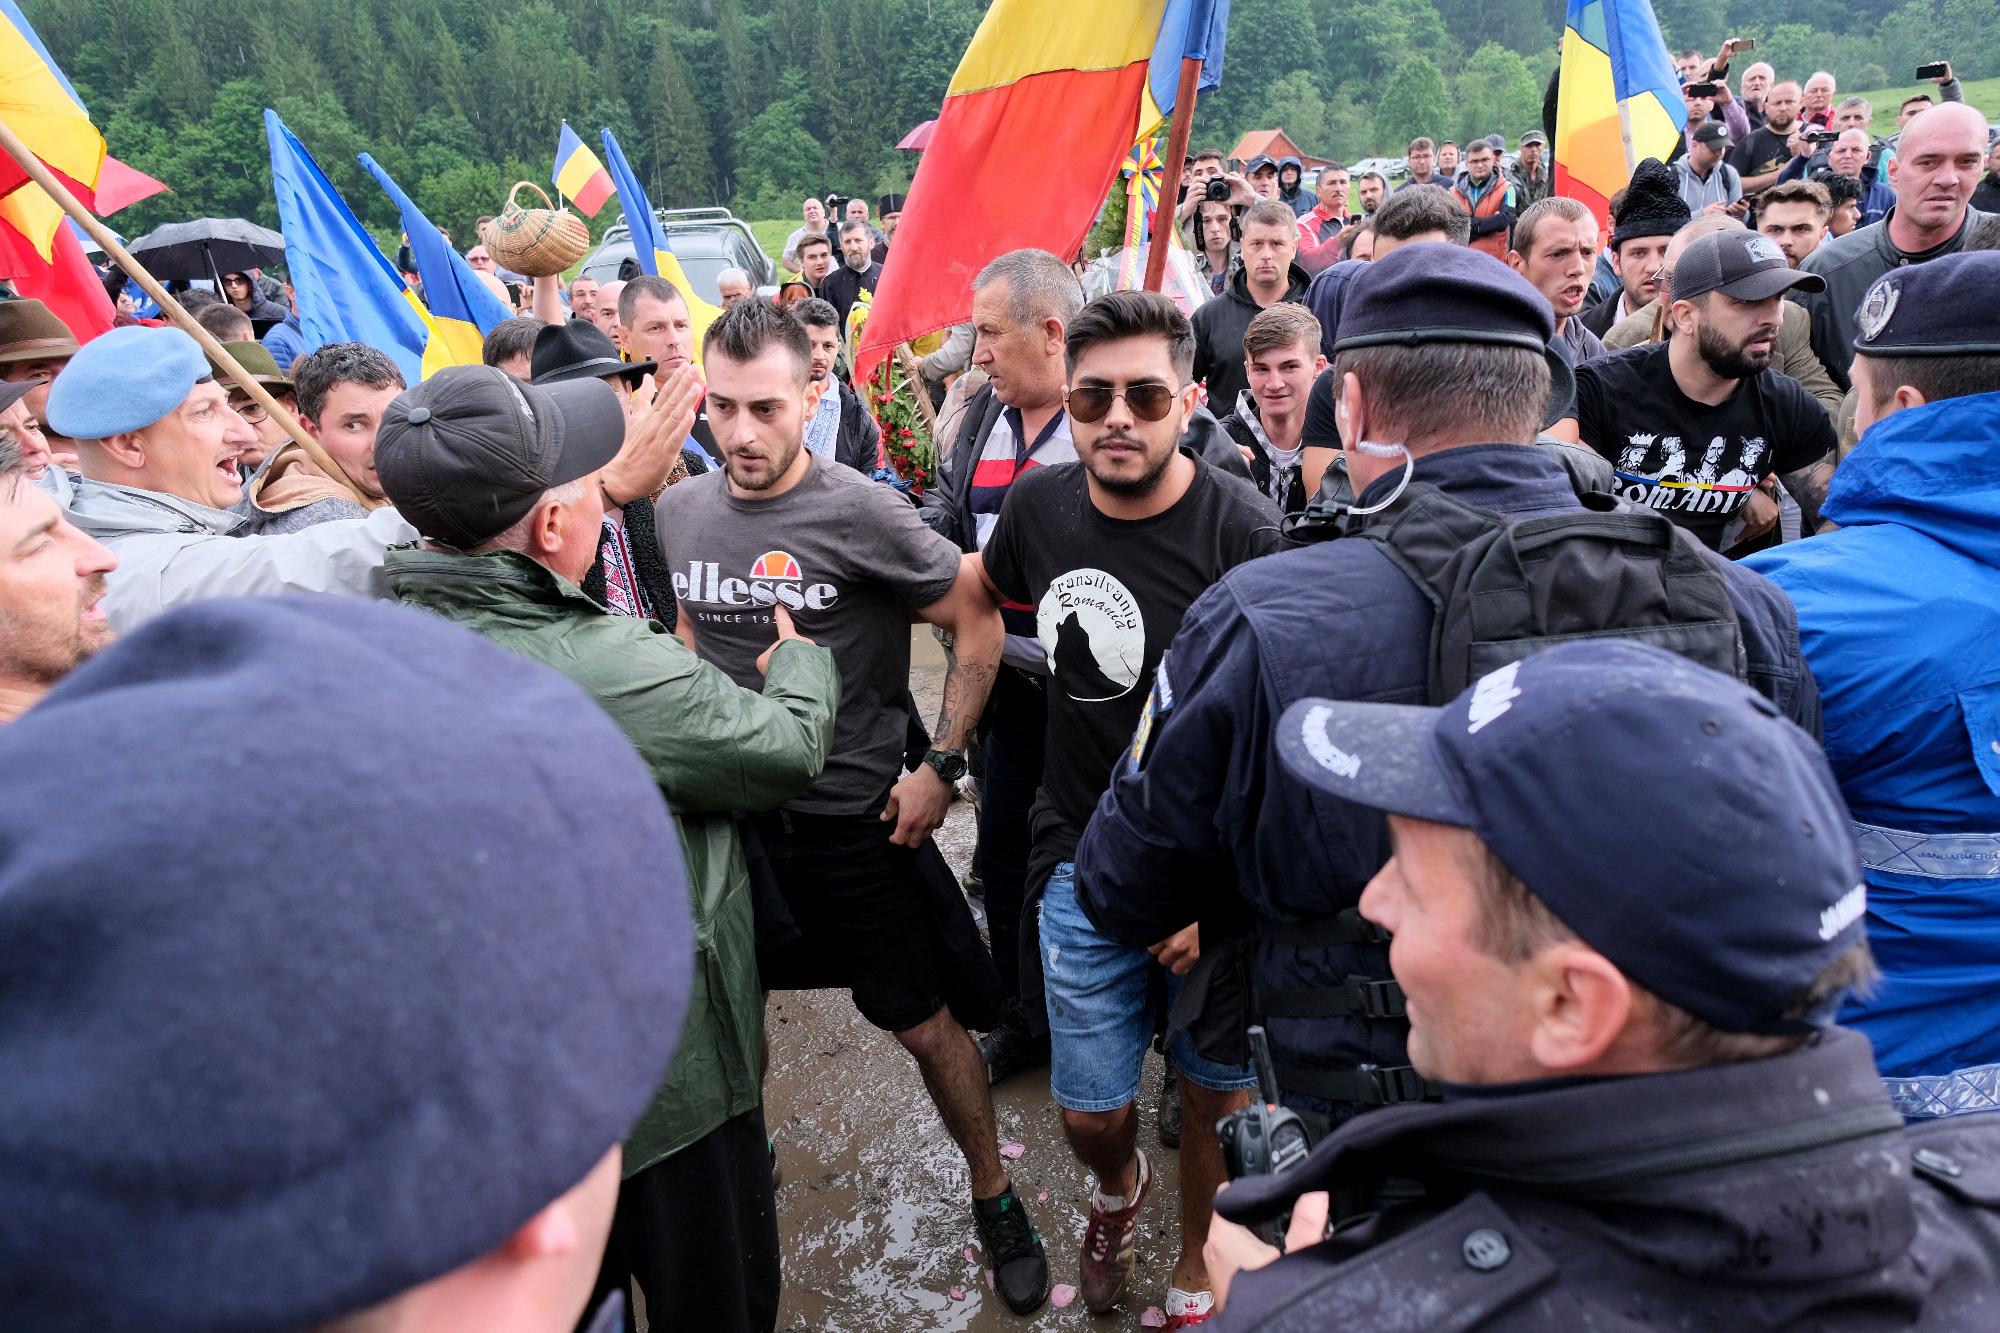 Román ügyészség: Nem uszítás a „kifele a magyarokkal az országból!”